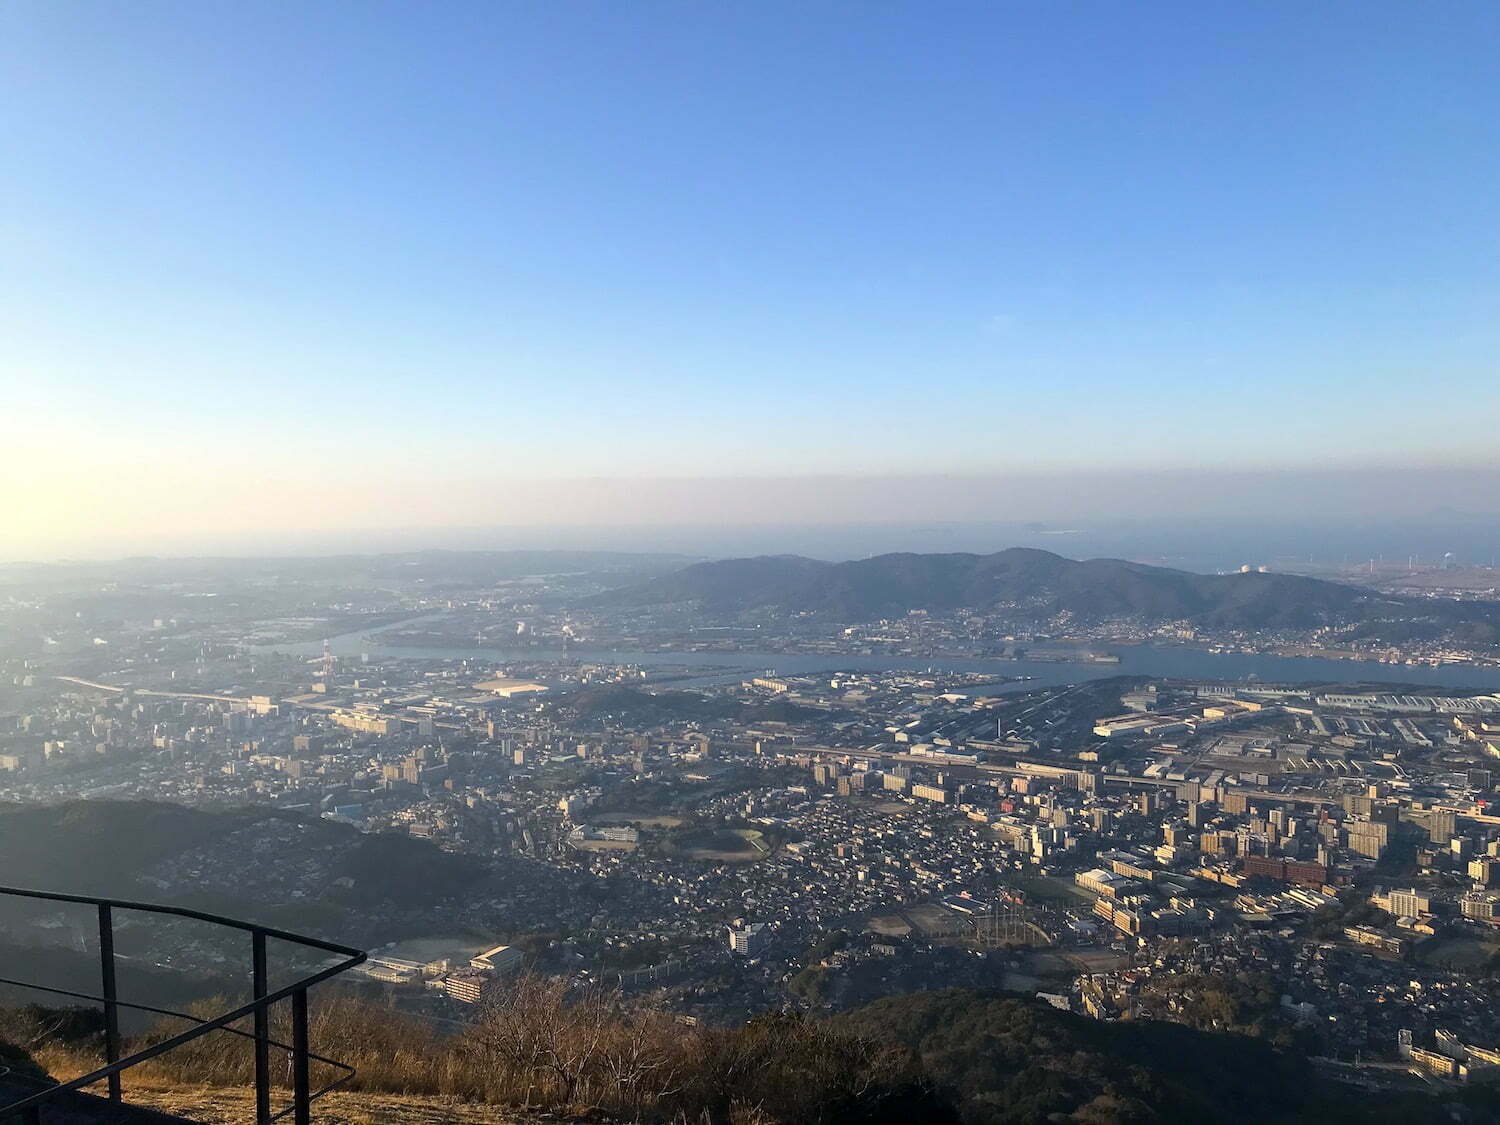 View from Sarakura mountain